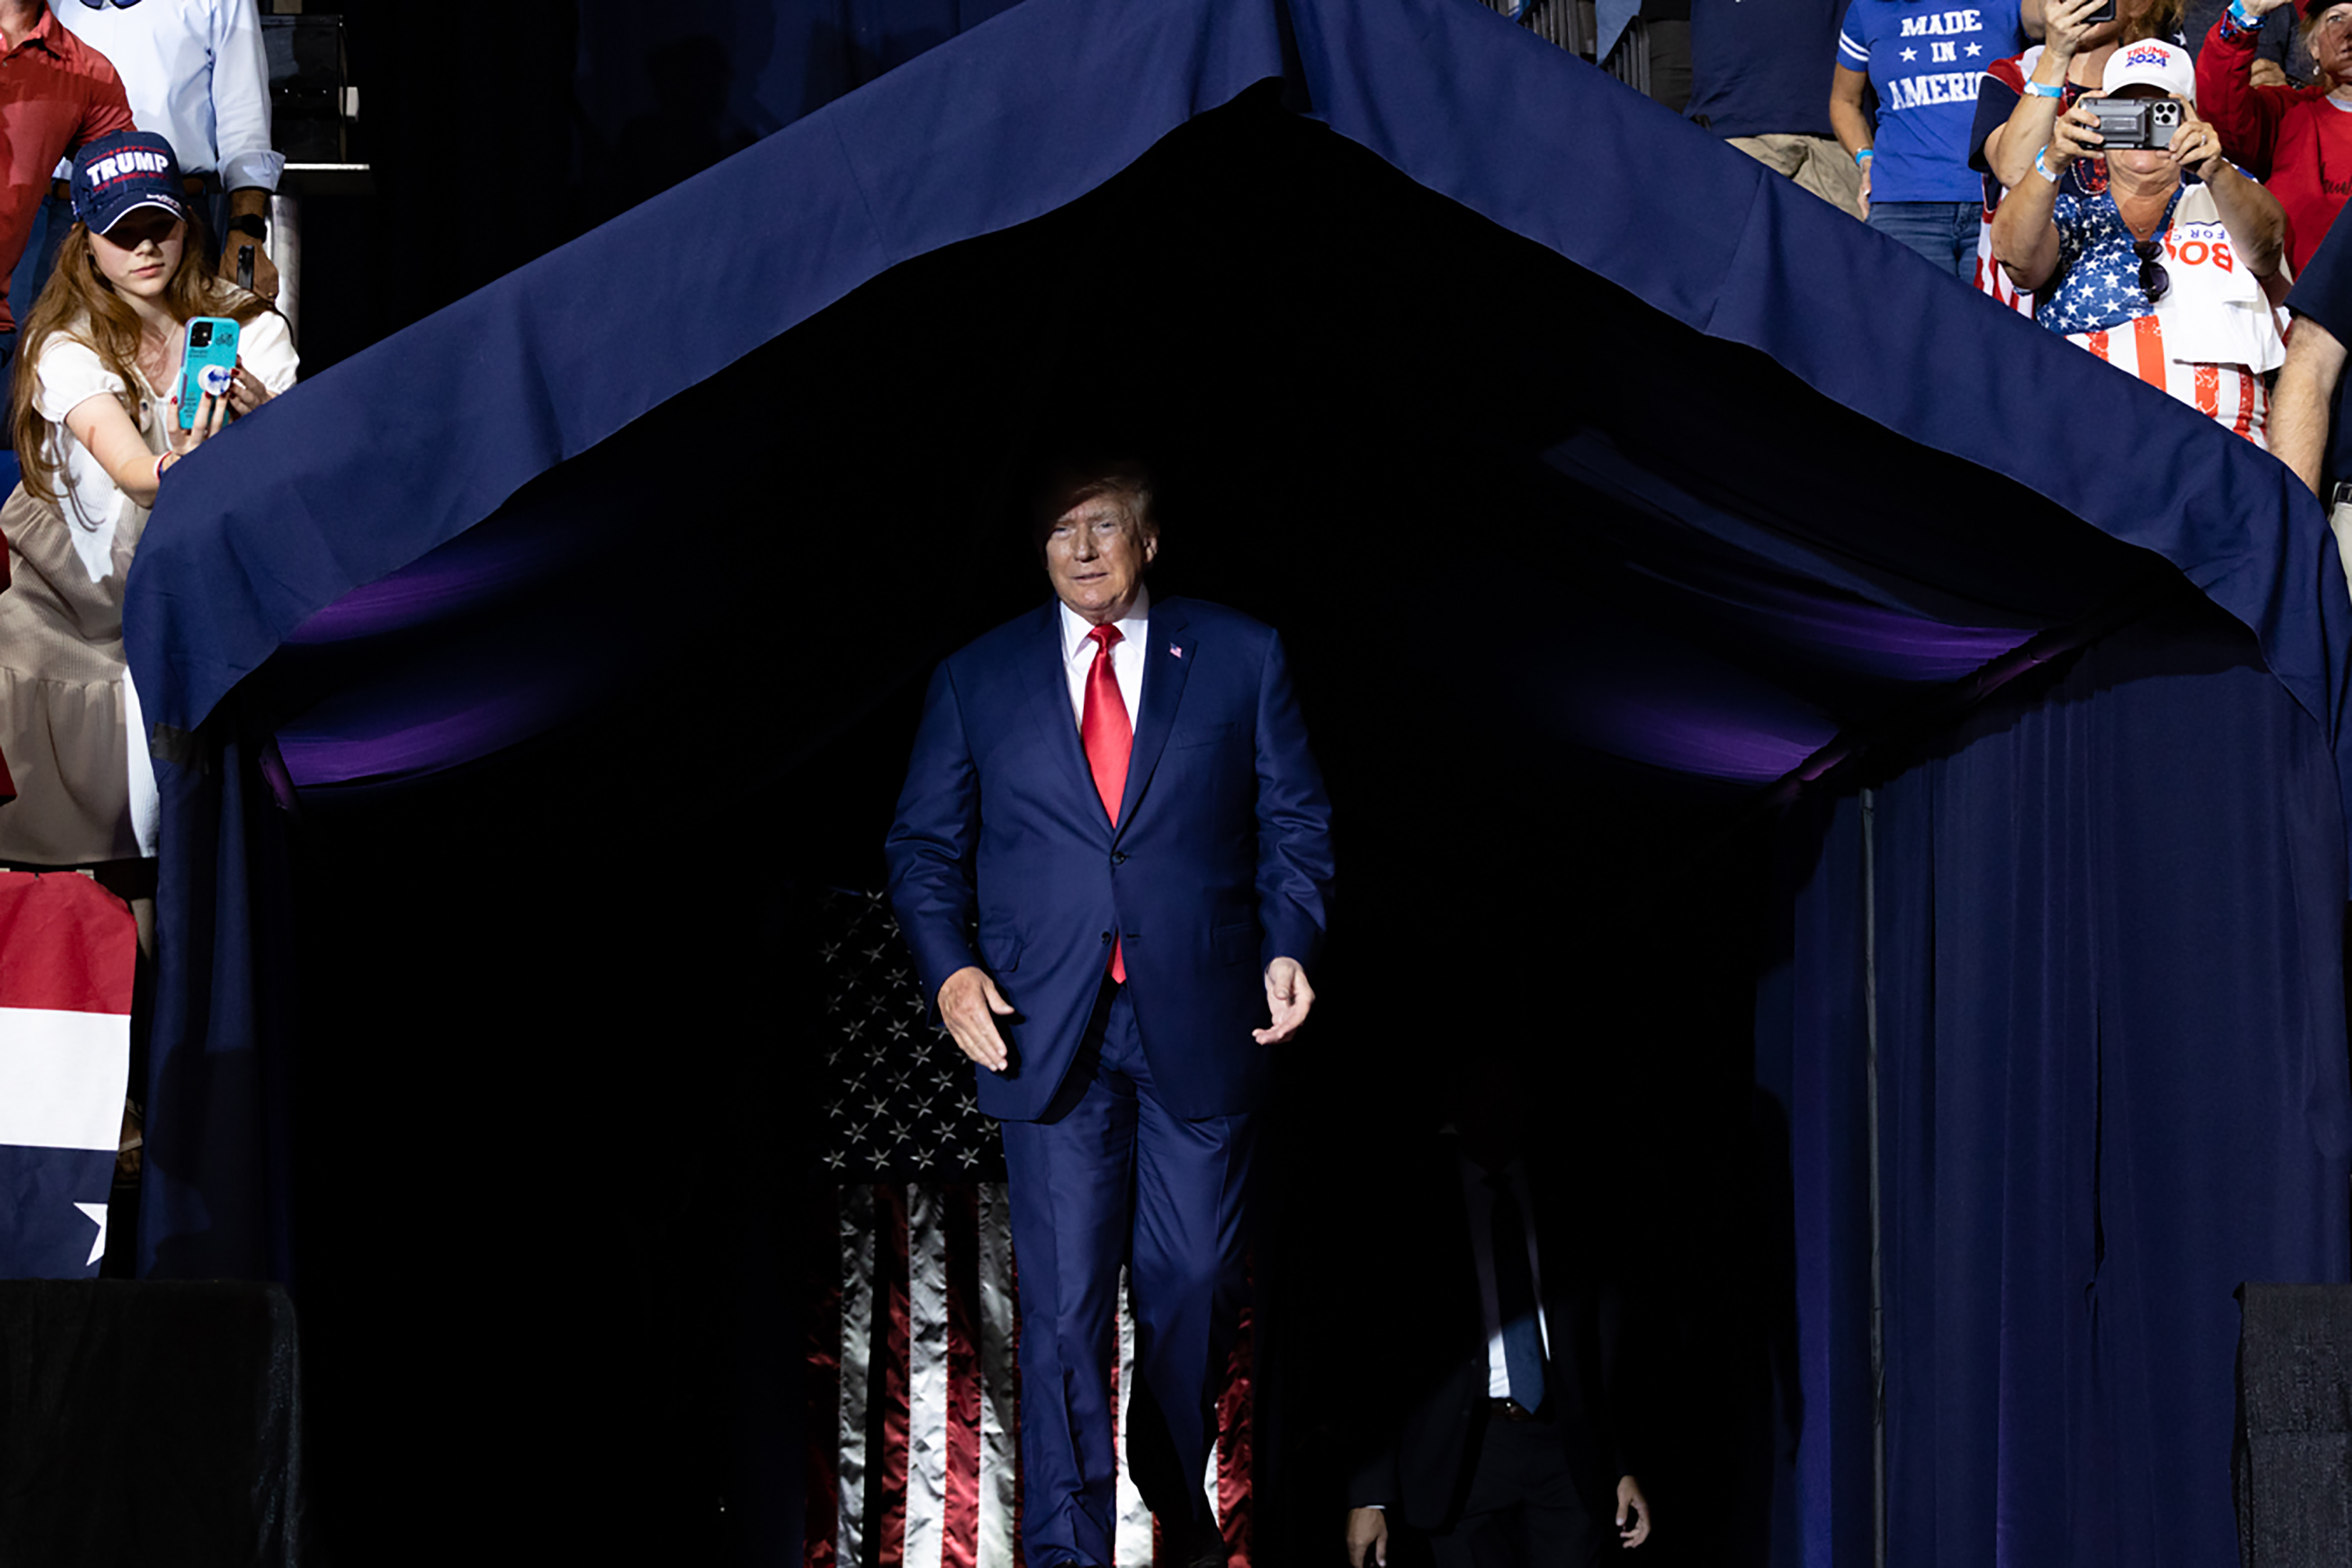 El ex presidente Donald Trump sube al escenario en Wilkes-Barre, Pensilvania, el 3 de septiembre de 2022.  (Foto Prensa Libre: Hannah Beier/The New York Times)